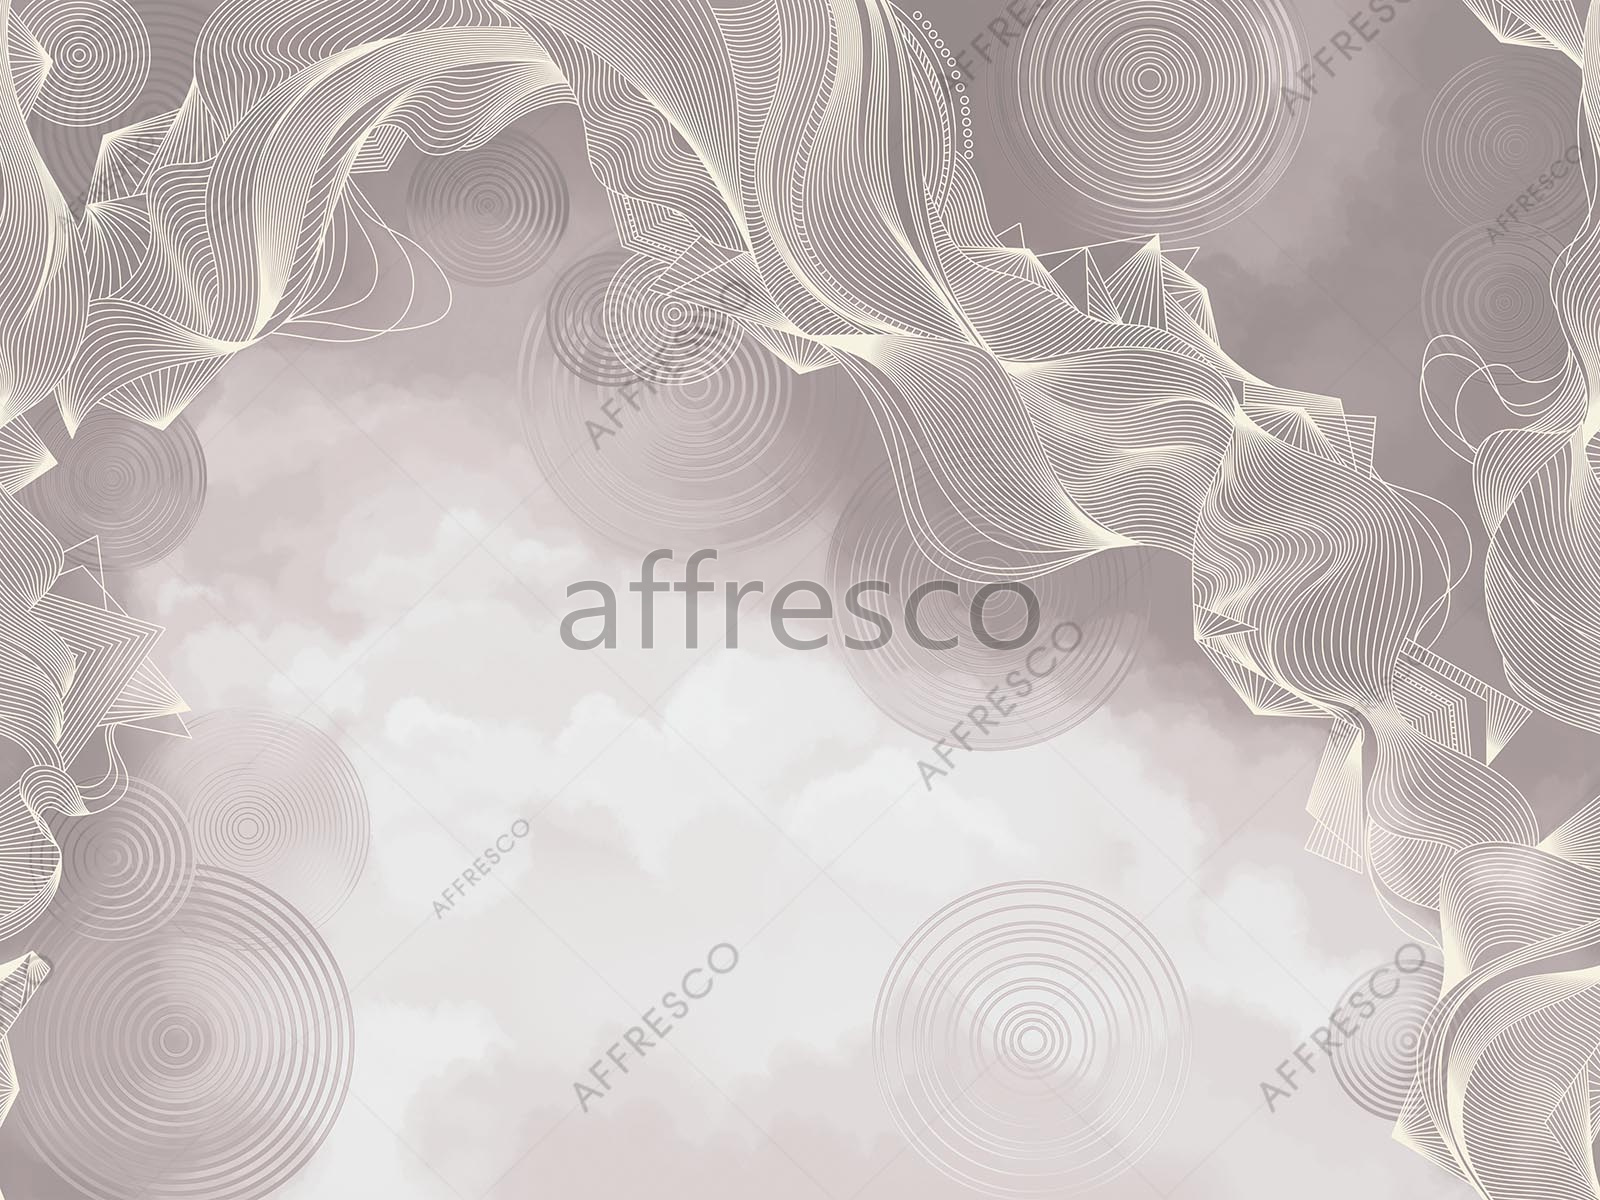 AF2134-COL2 | Line Art | Affresco Factory